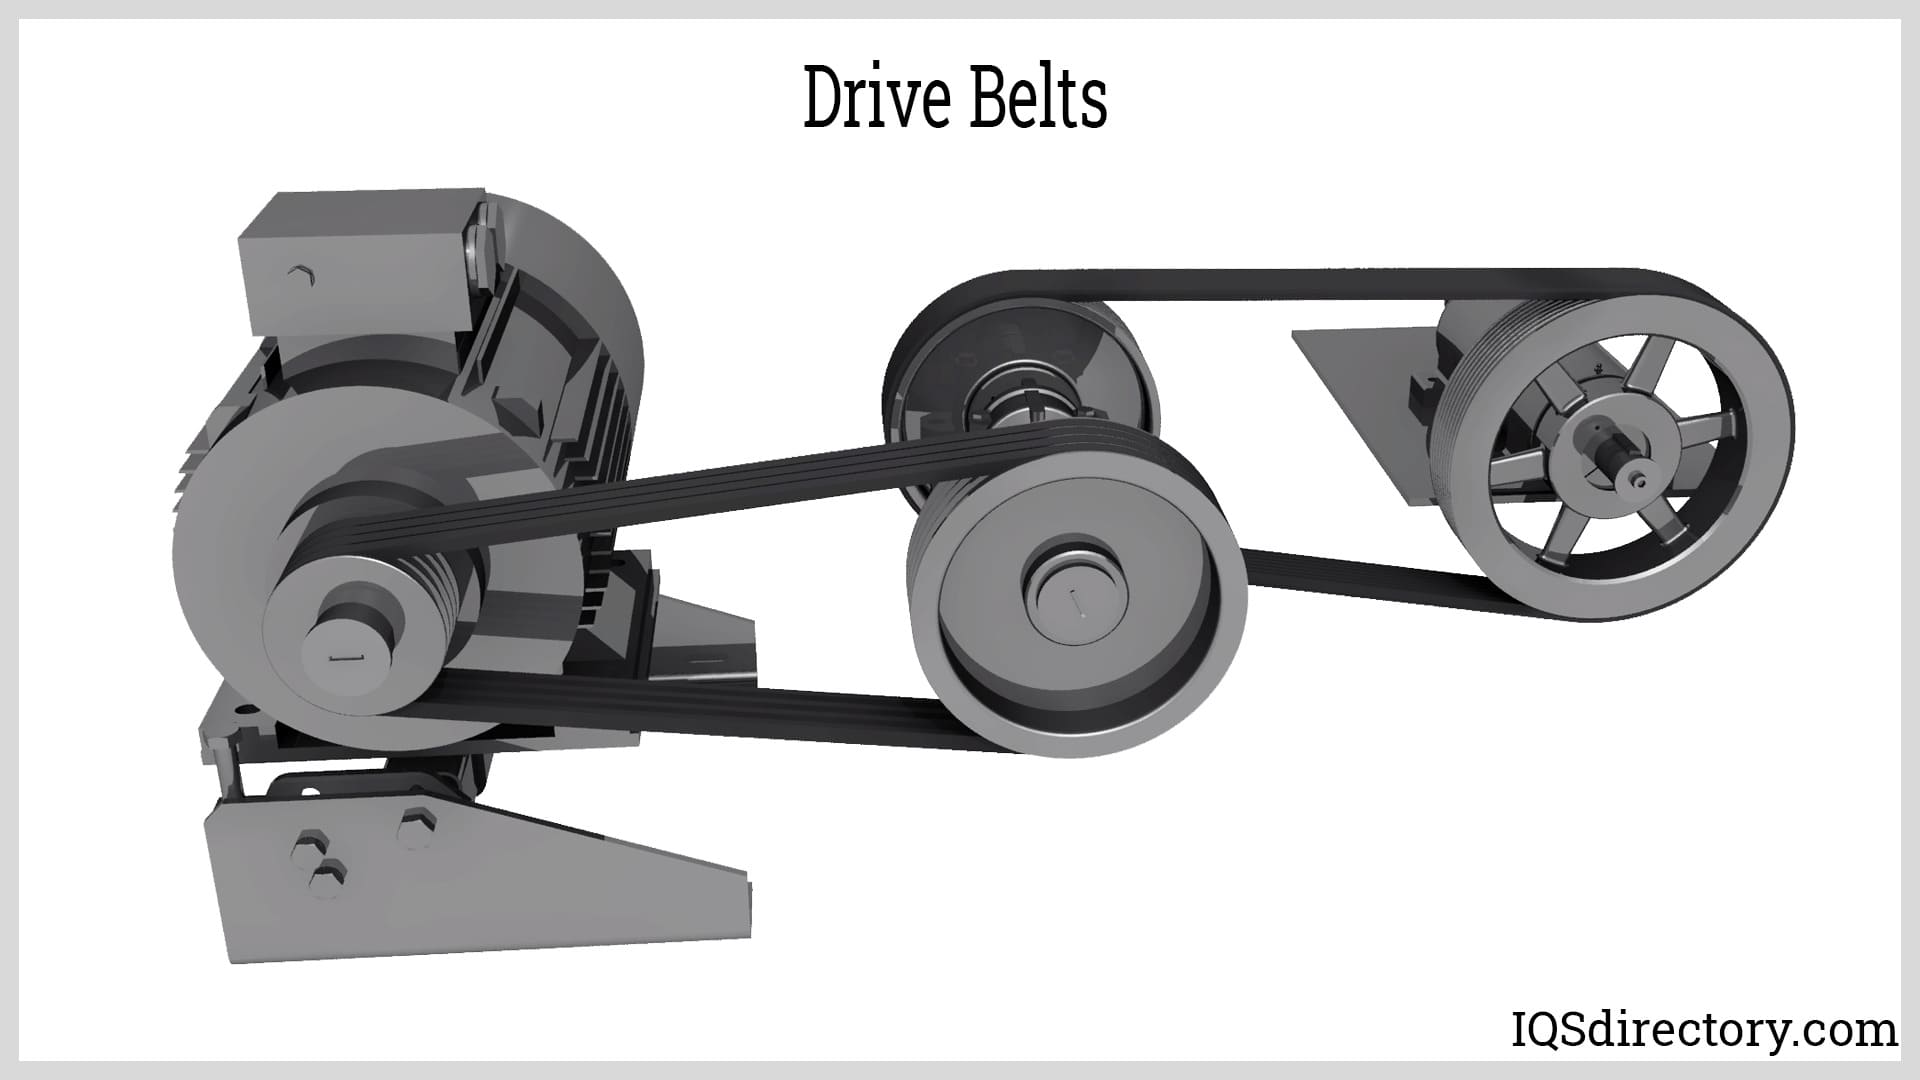 V-Belts, Vee Belts, Drive Belt, Industrial Parts Distributor, MN